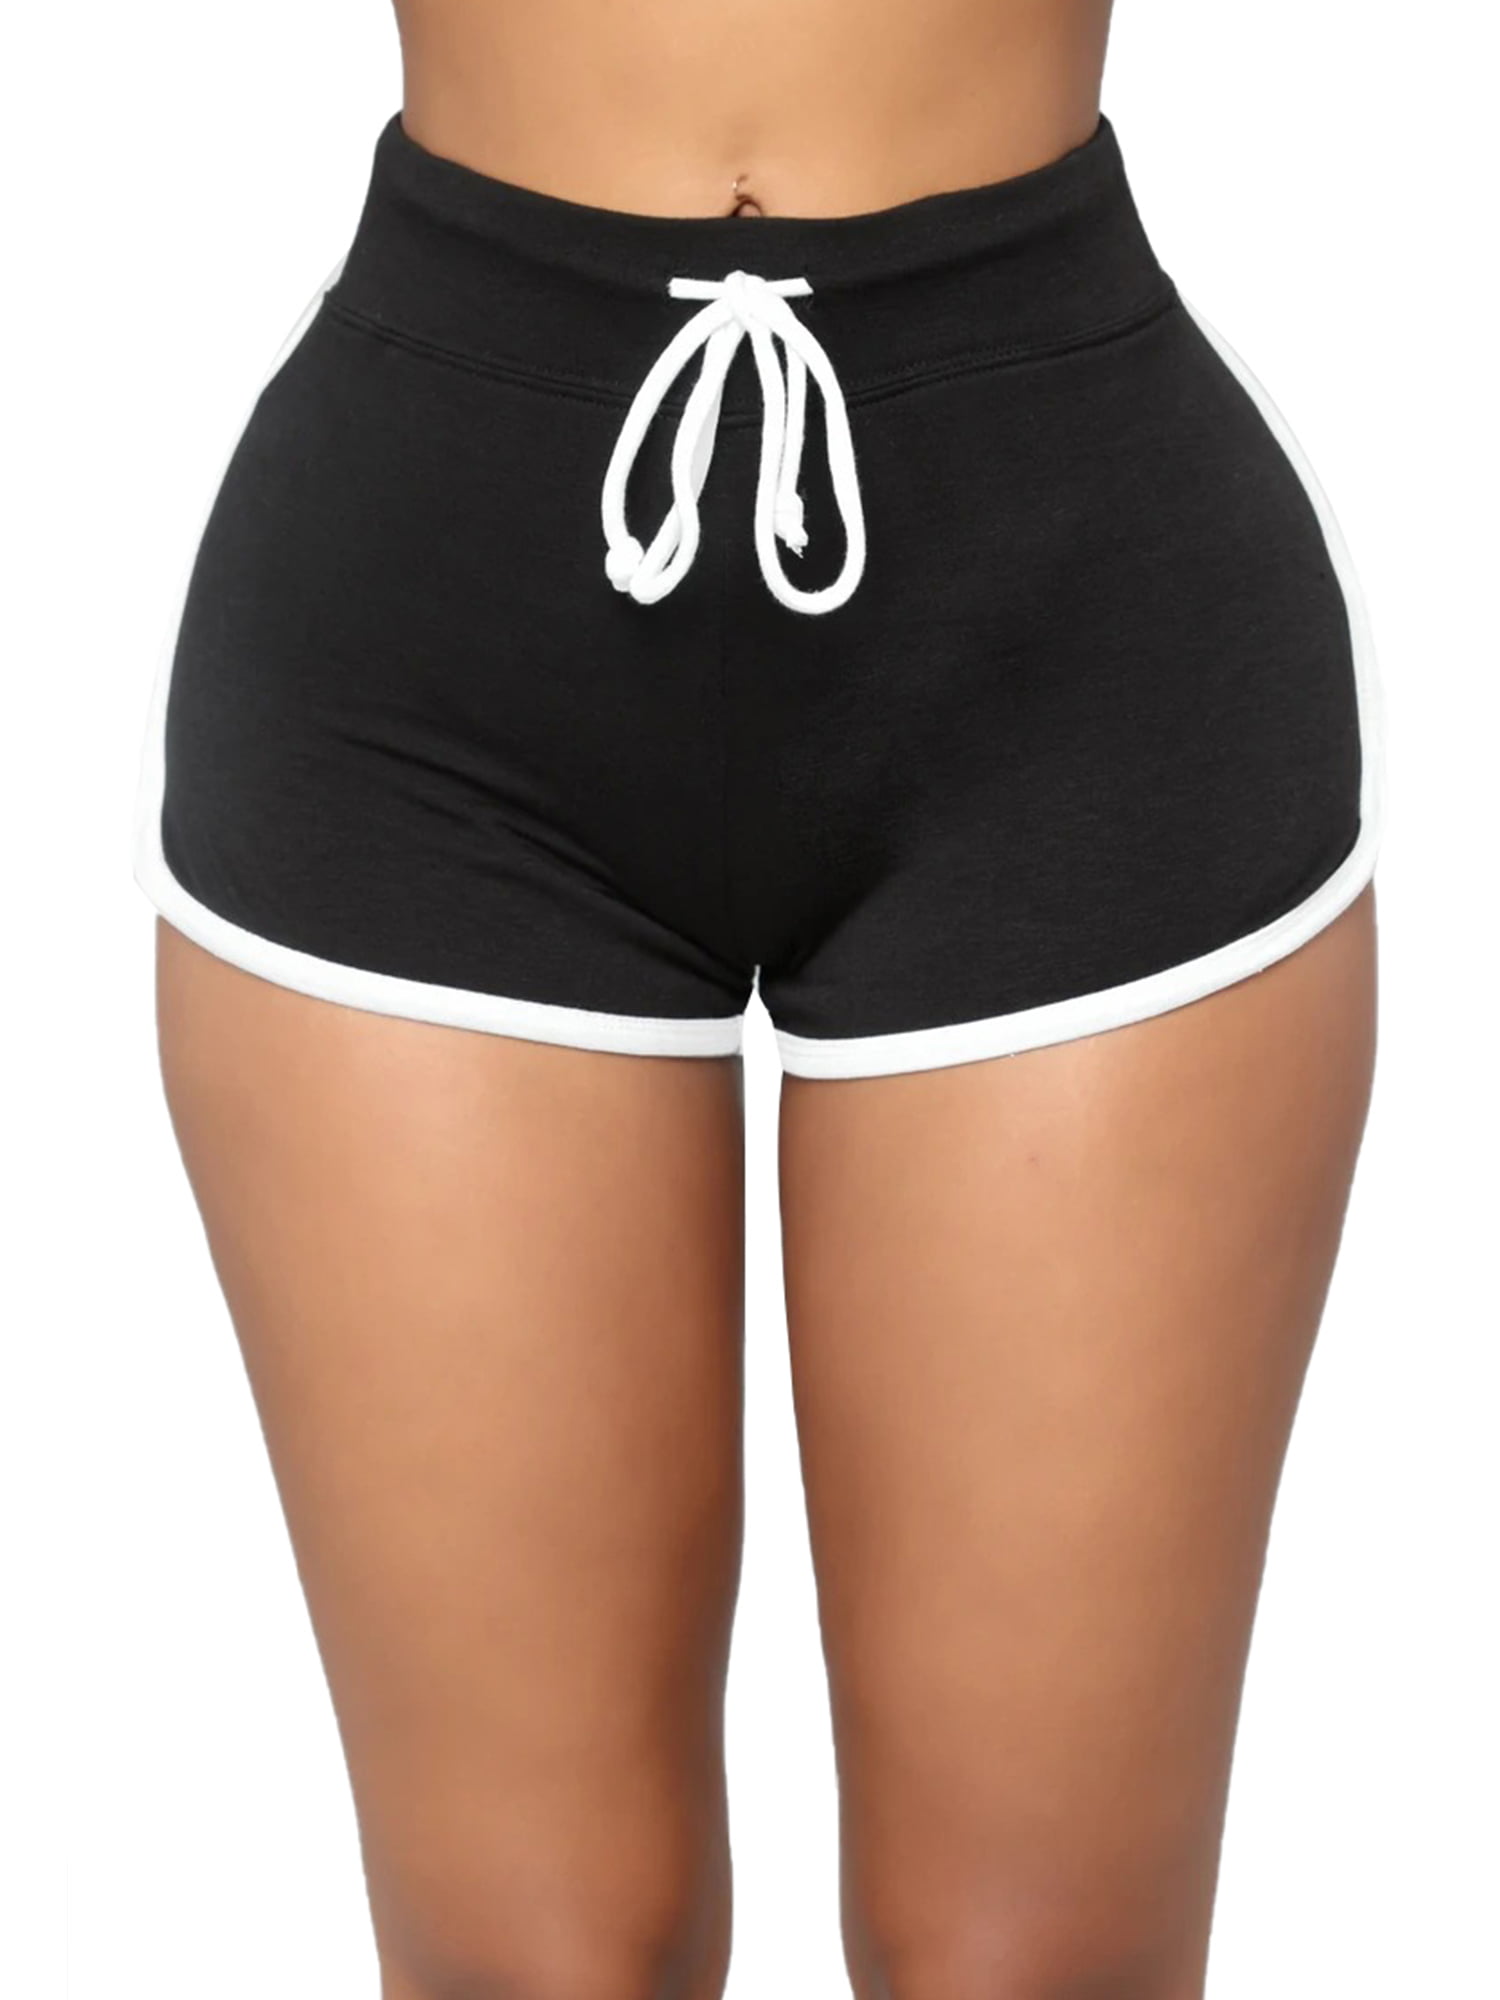 UKAP Women Lounge Shorts Pajama Short Pants Nightwear Sleepwear